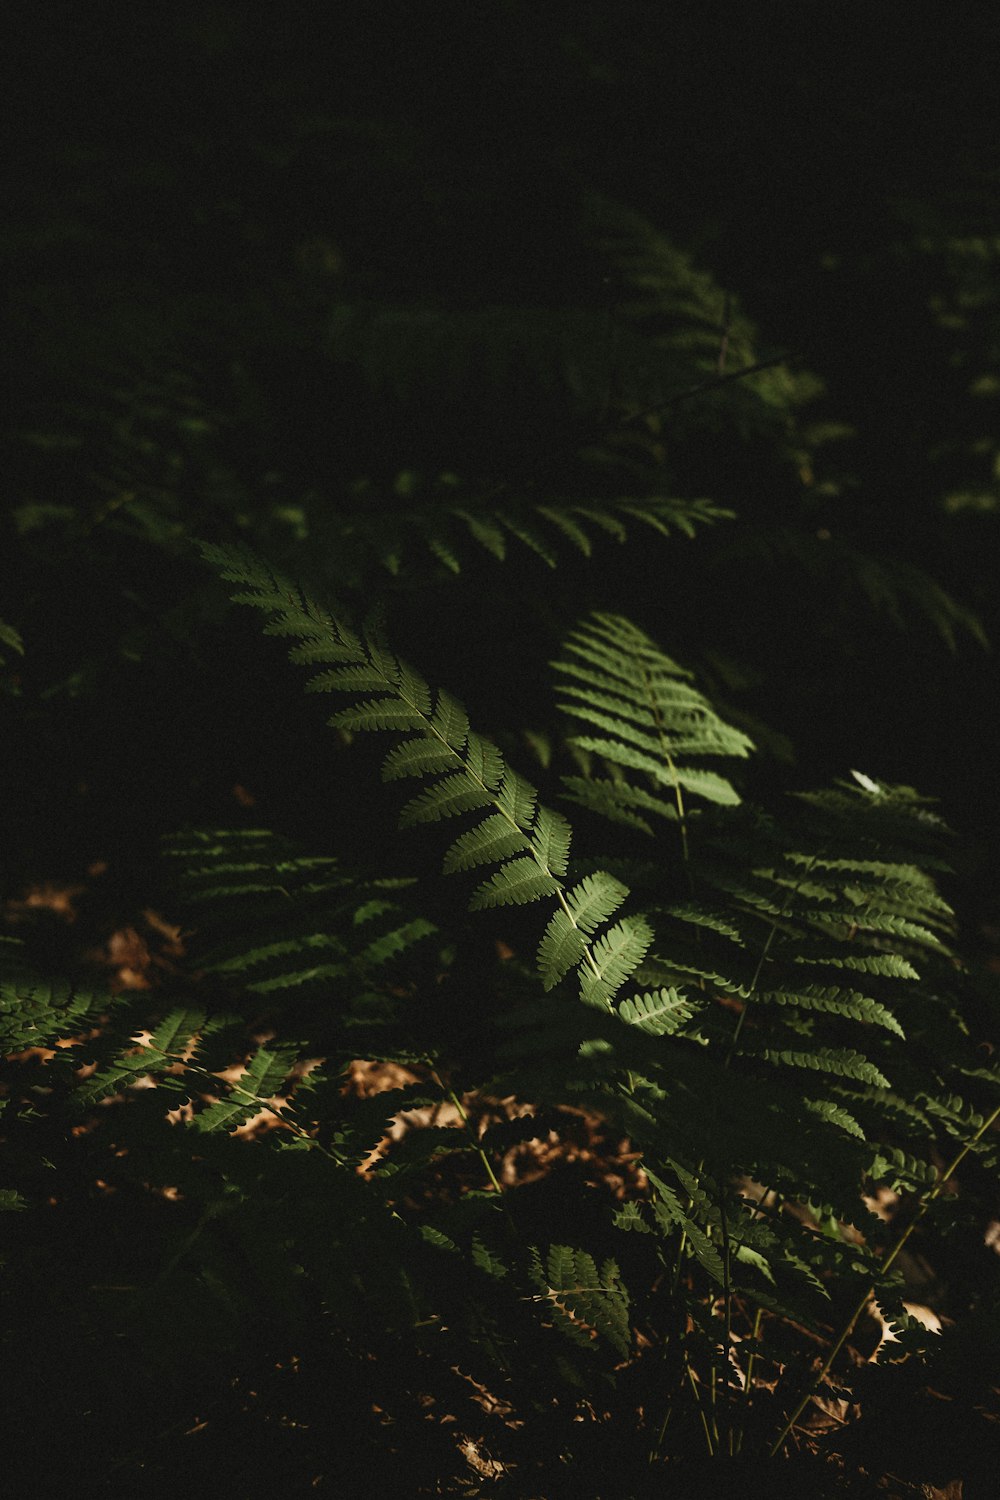 a close up of a fern in the dark